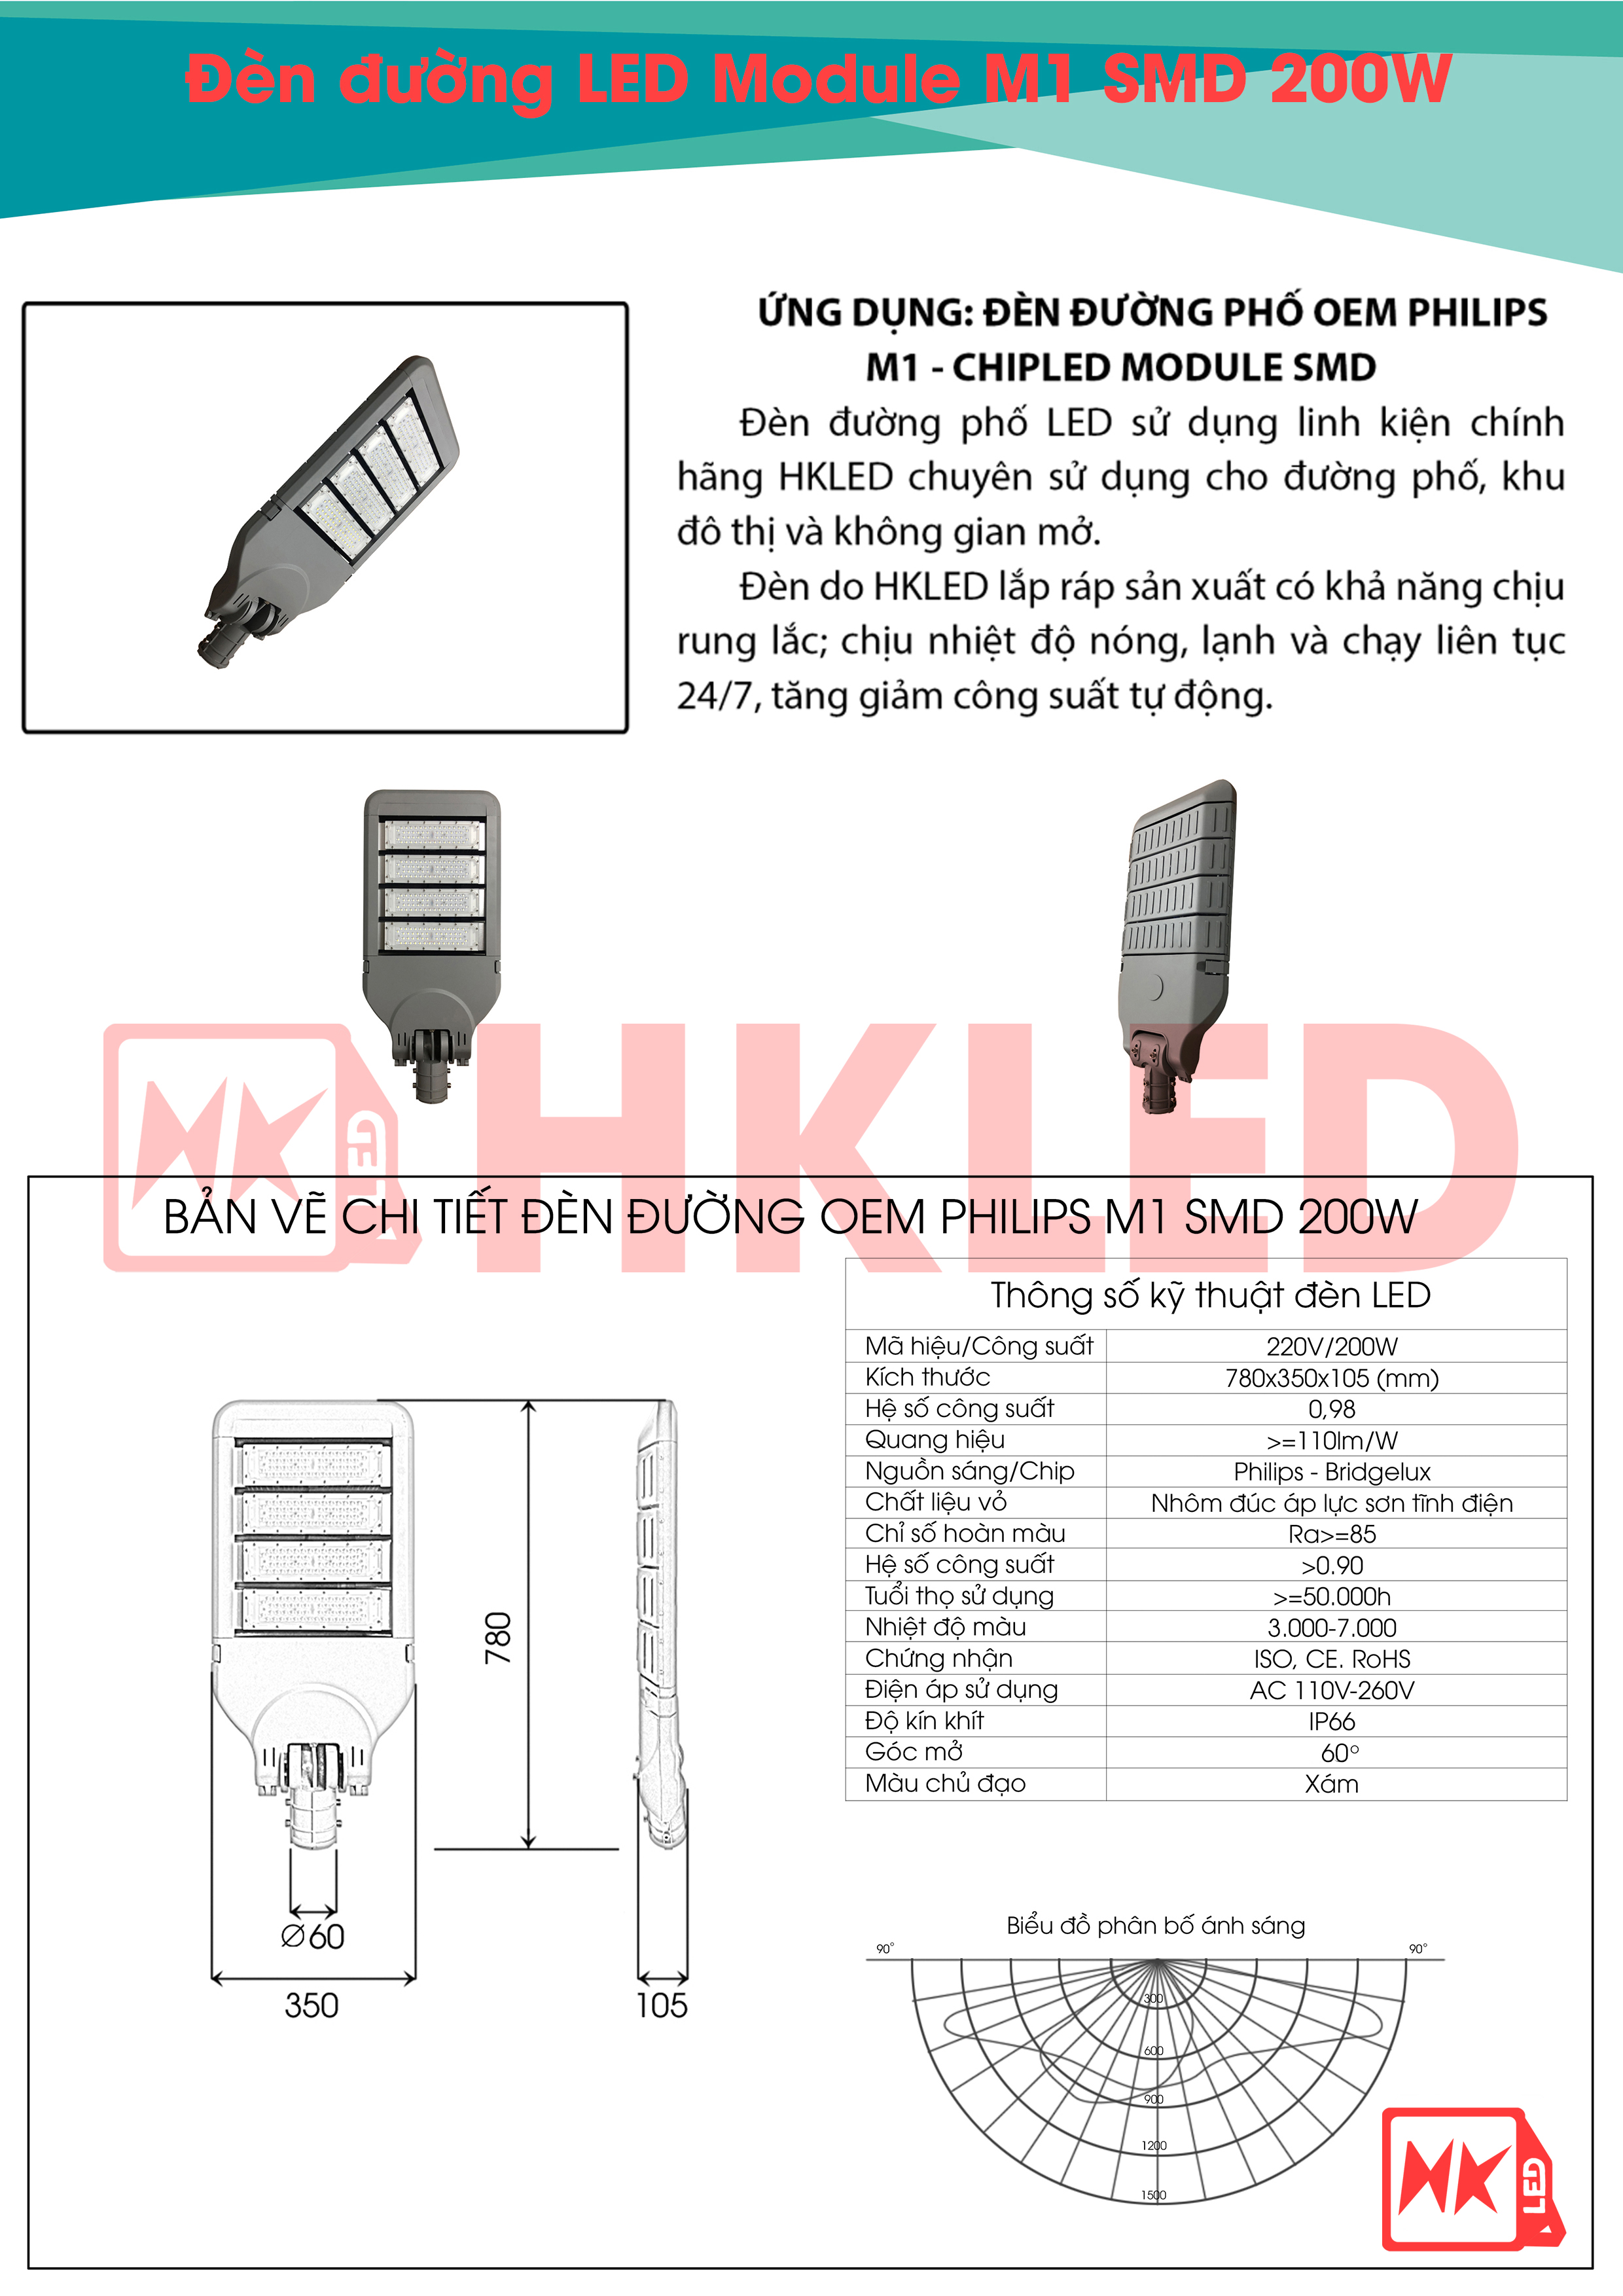 Ứng dụng, bản vẽ chi tiết và thông số kỹ thuật đèn đường LED OEM Philips M1 Module SMD 200W